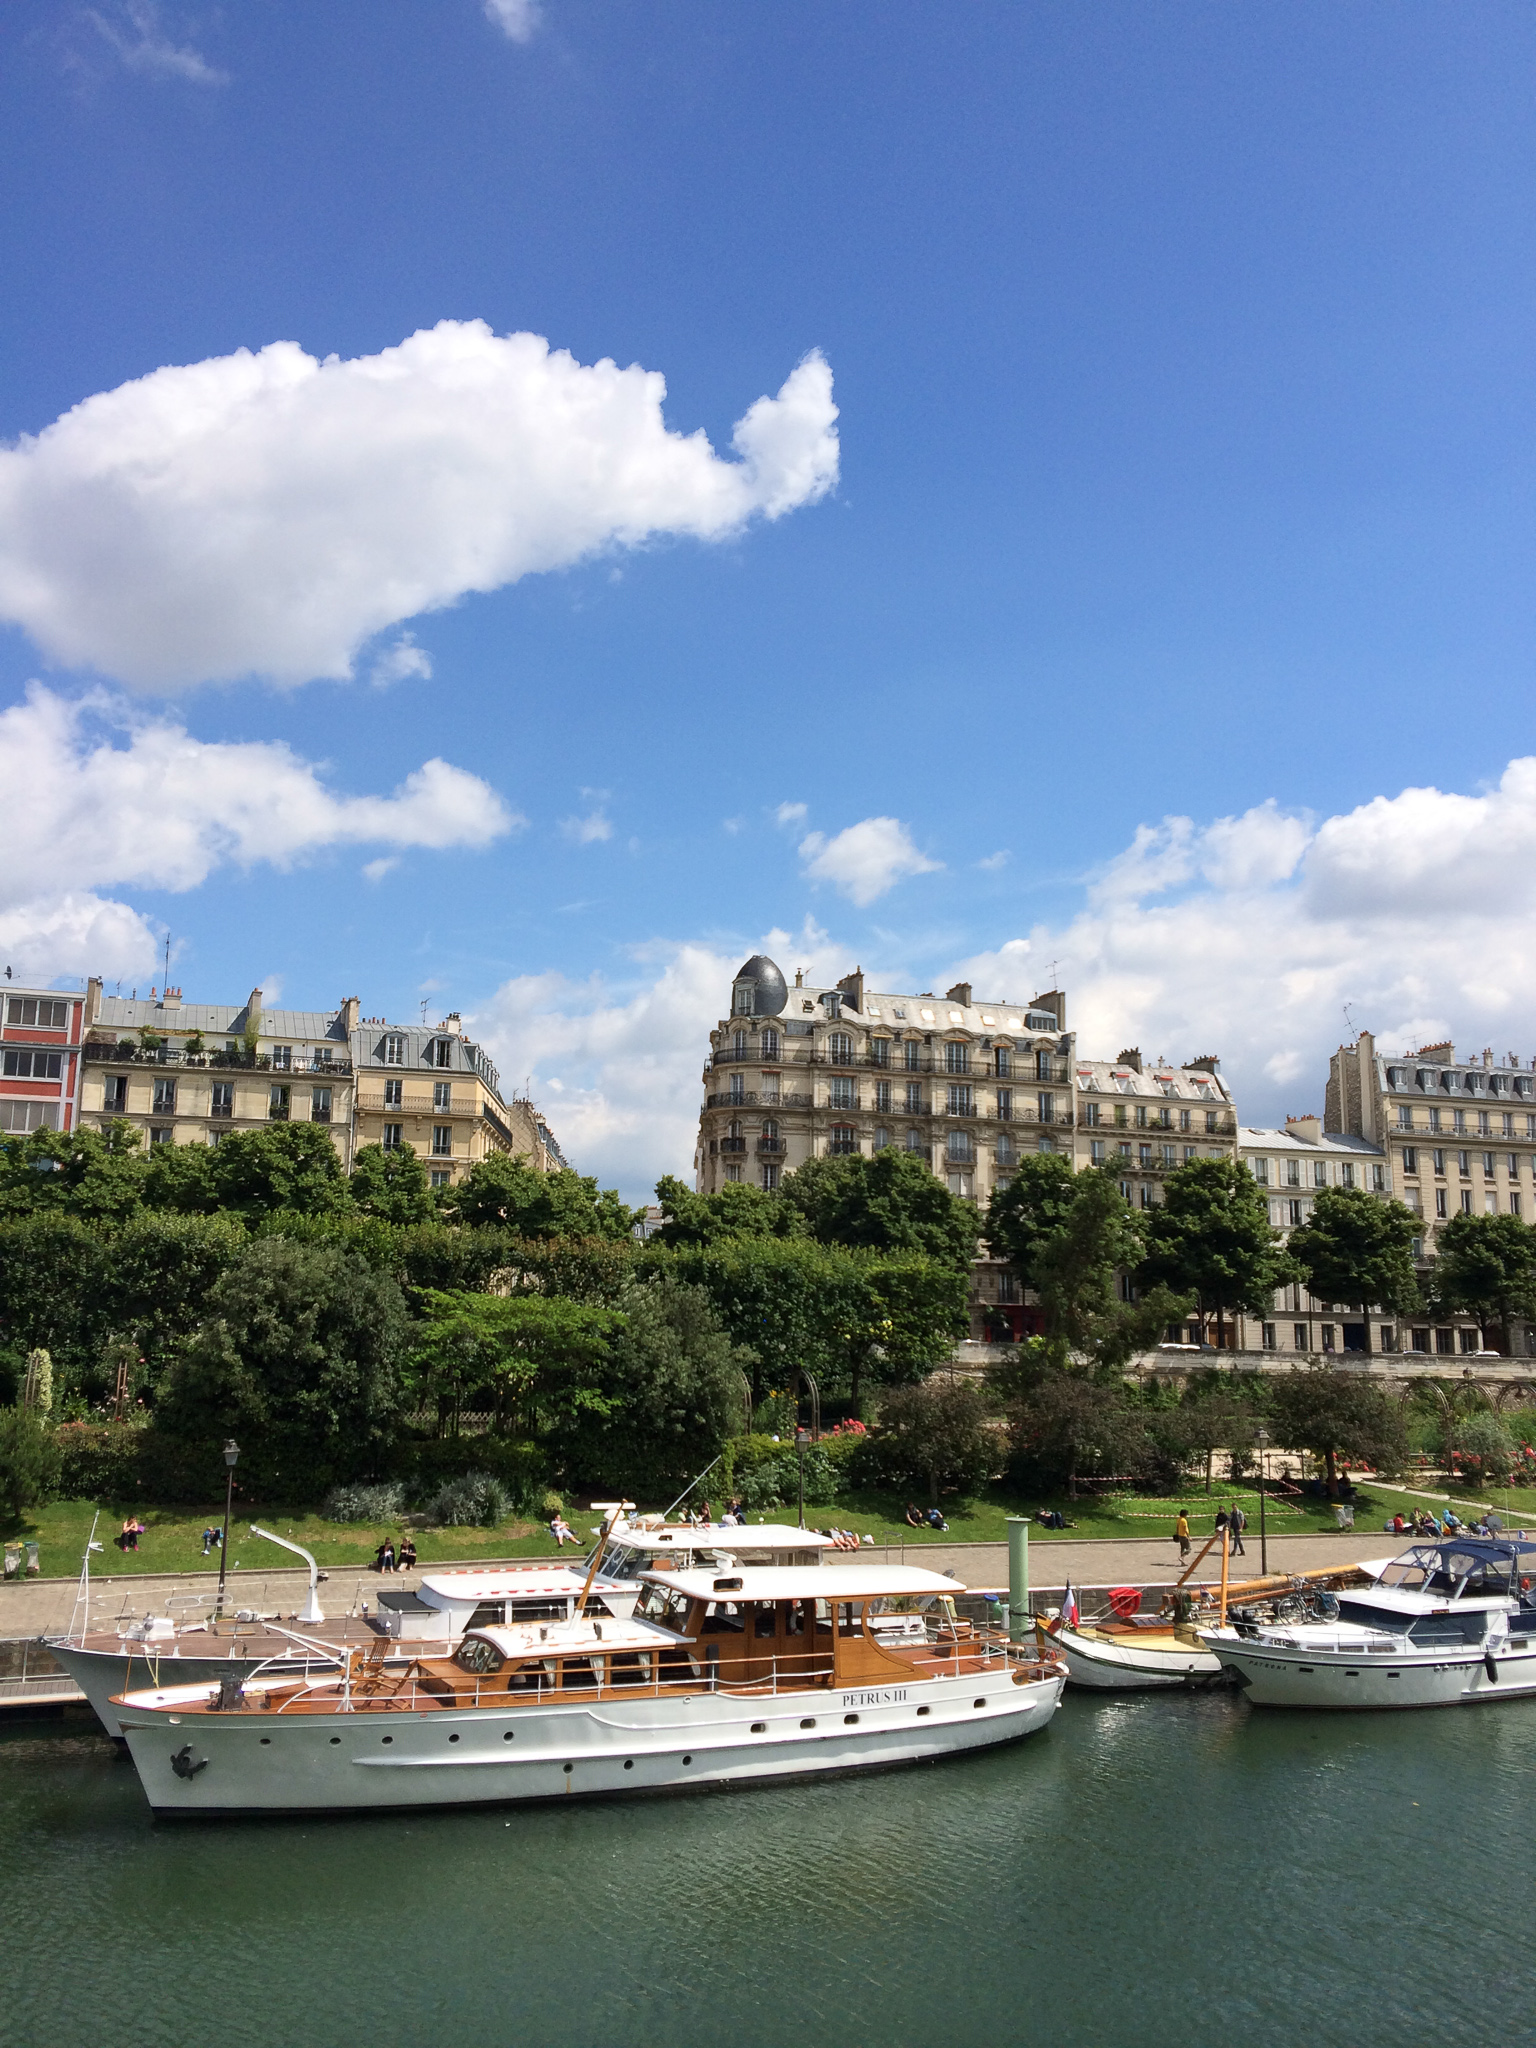 Houseboats on the Seine. La vie est belle!